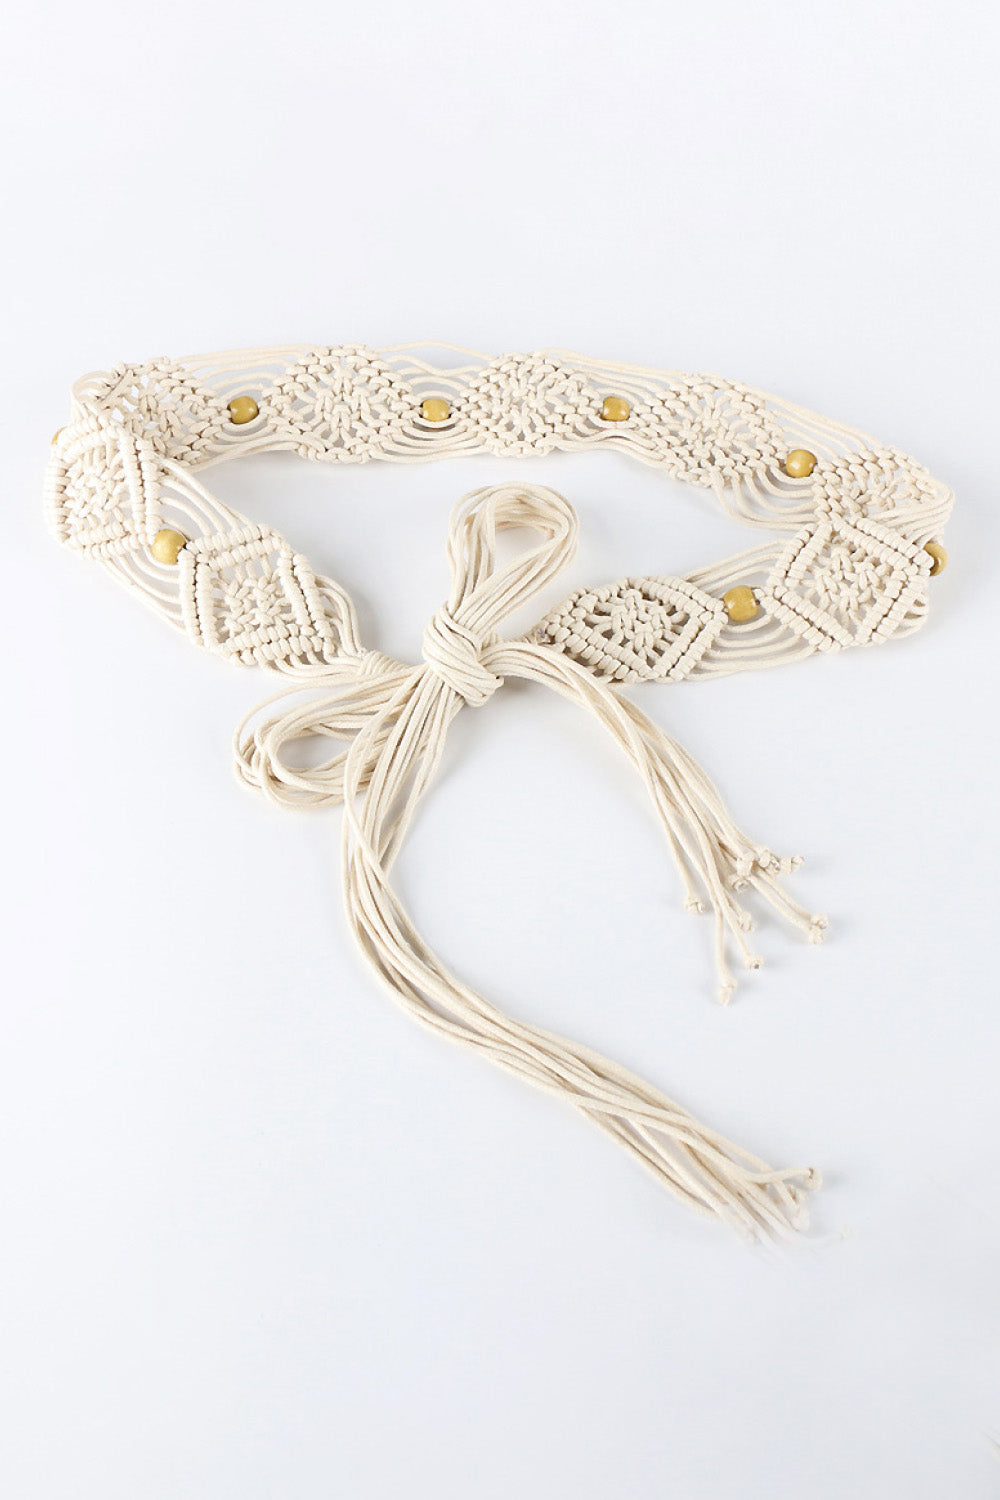 Boho Braid Belt with Fringes & Wood Beads